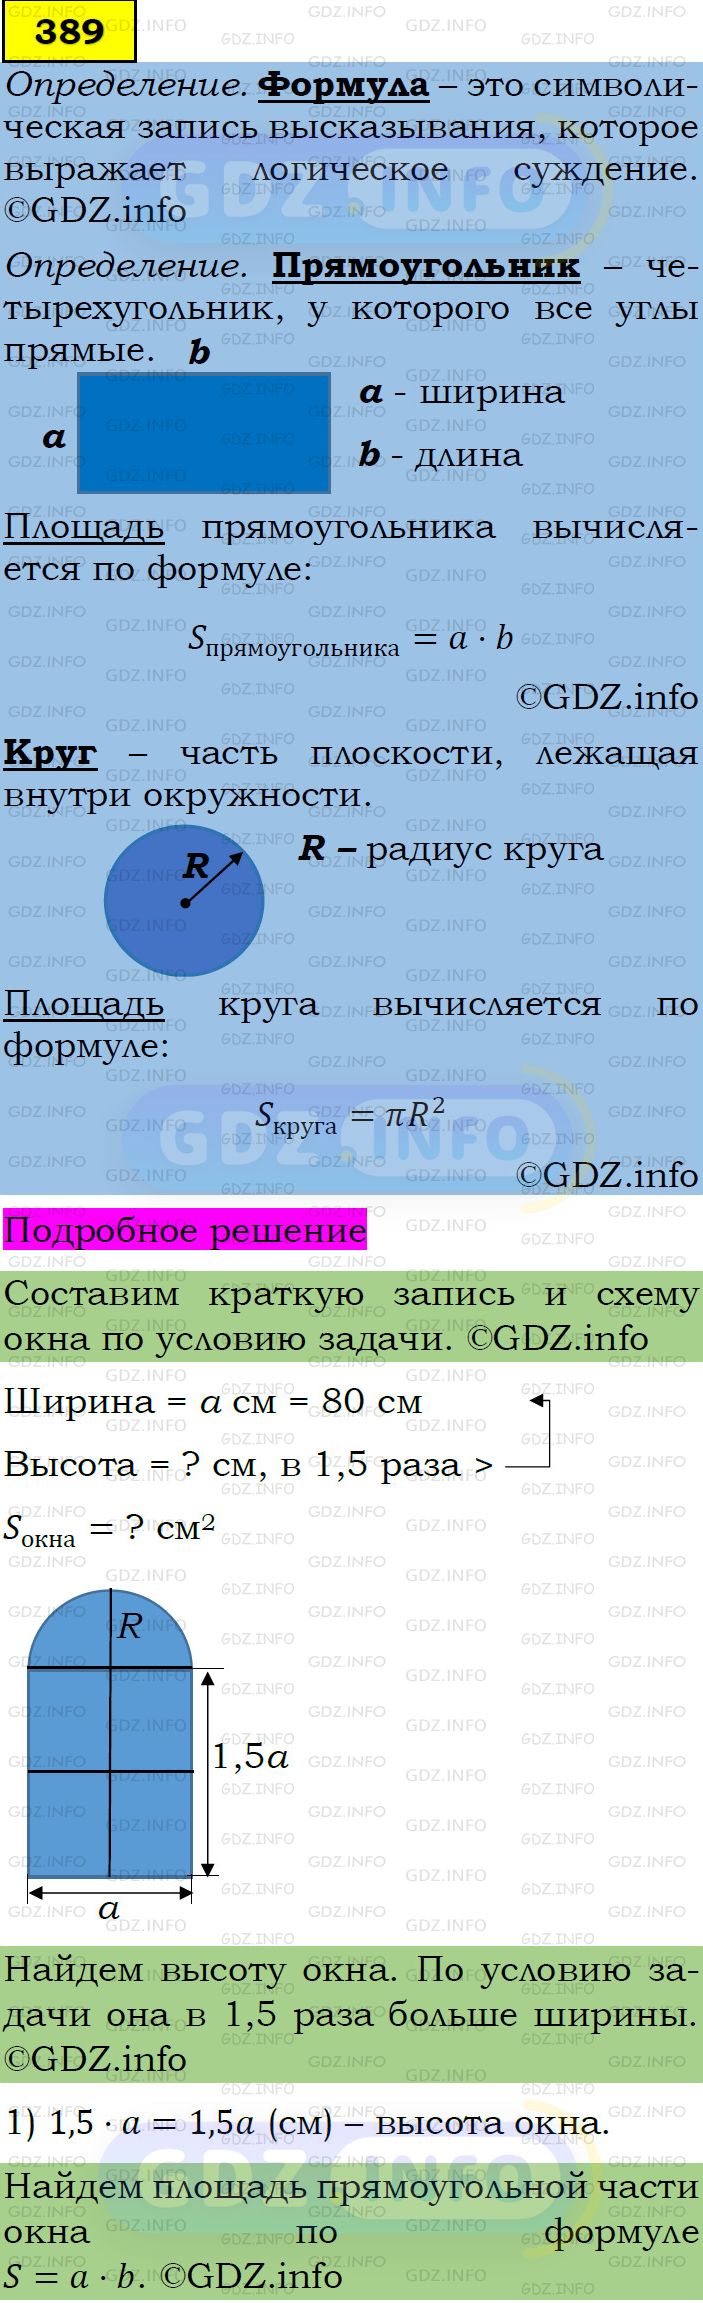 Фото подробного решения: Номер задания №389 из ГДЗ по Алгебре 7 класс: Макарычев Ю.Н.